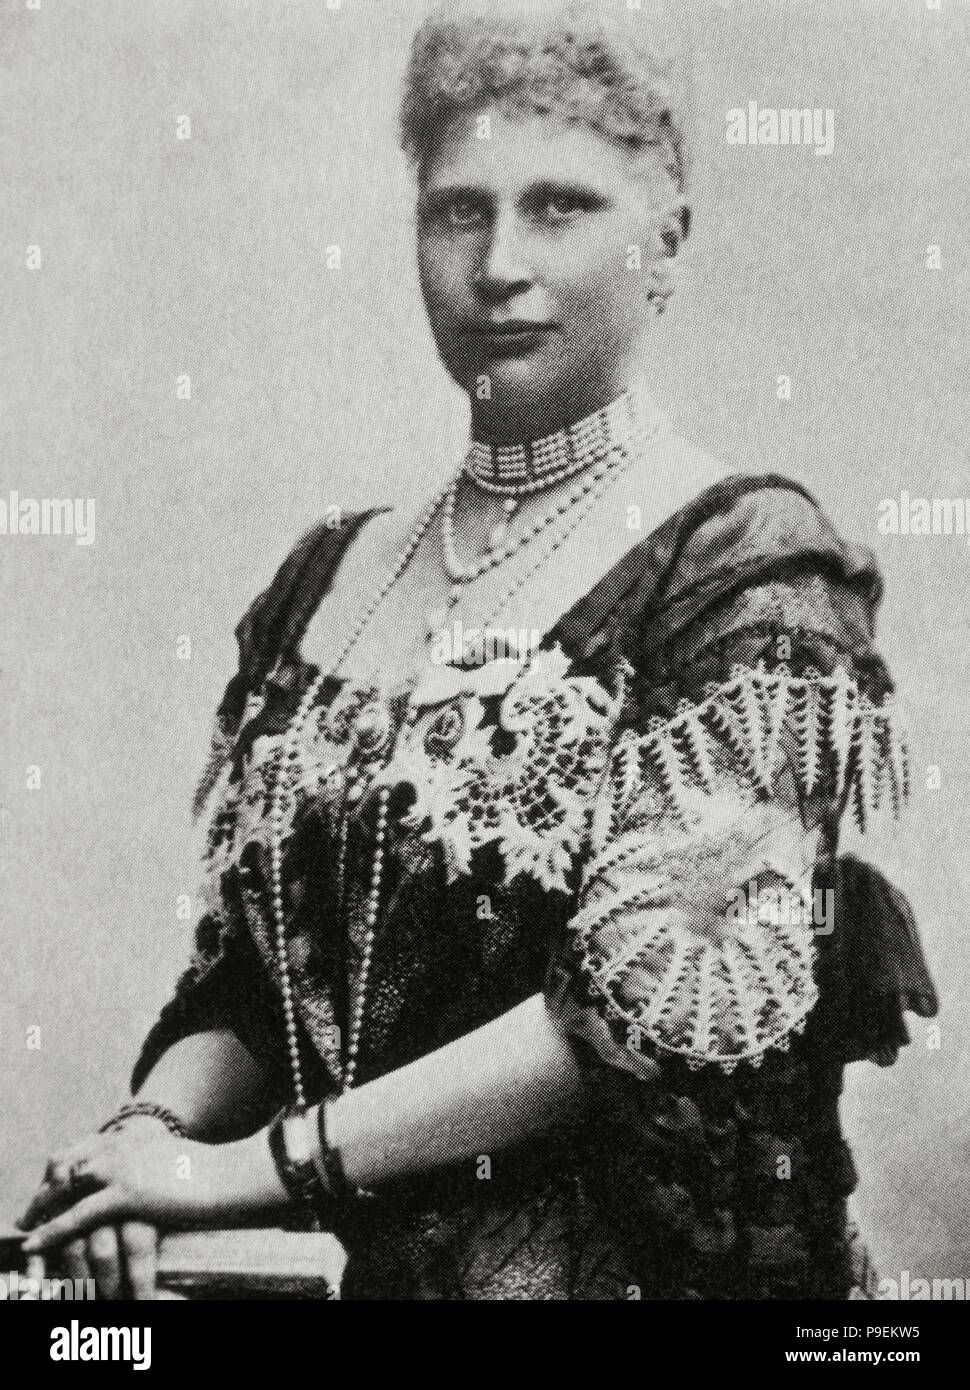 Louise von Schweden (1851-1926). Königin von Dänemark als die Frau von König Friedrich VIII. Porträt. Fotografie. Stockfoto